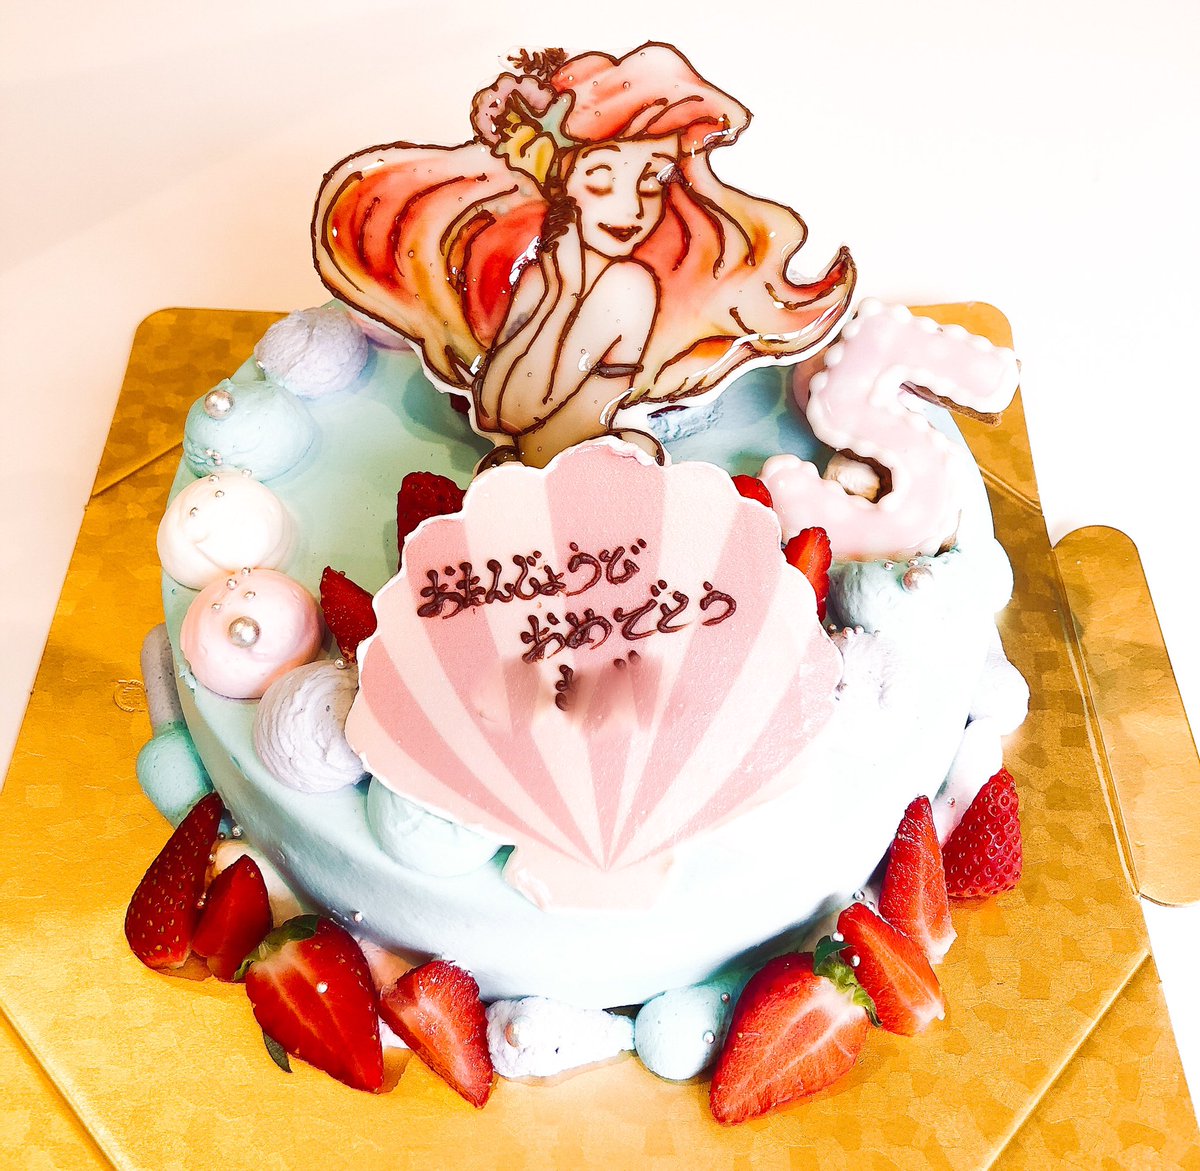 洋菓子の家ｍｉｍｉ On Twitter ケーキの中からアリエル これは嬉しいお誕生日ケーキになりそうですね Mimi デコレーション ケーキ オリジナル